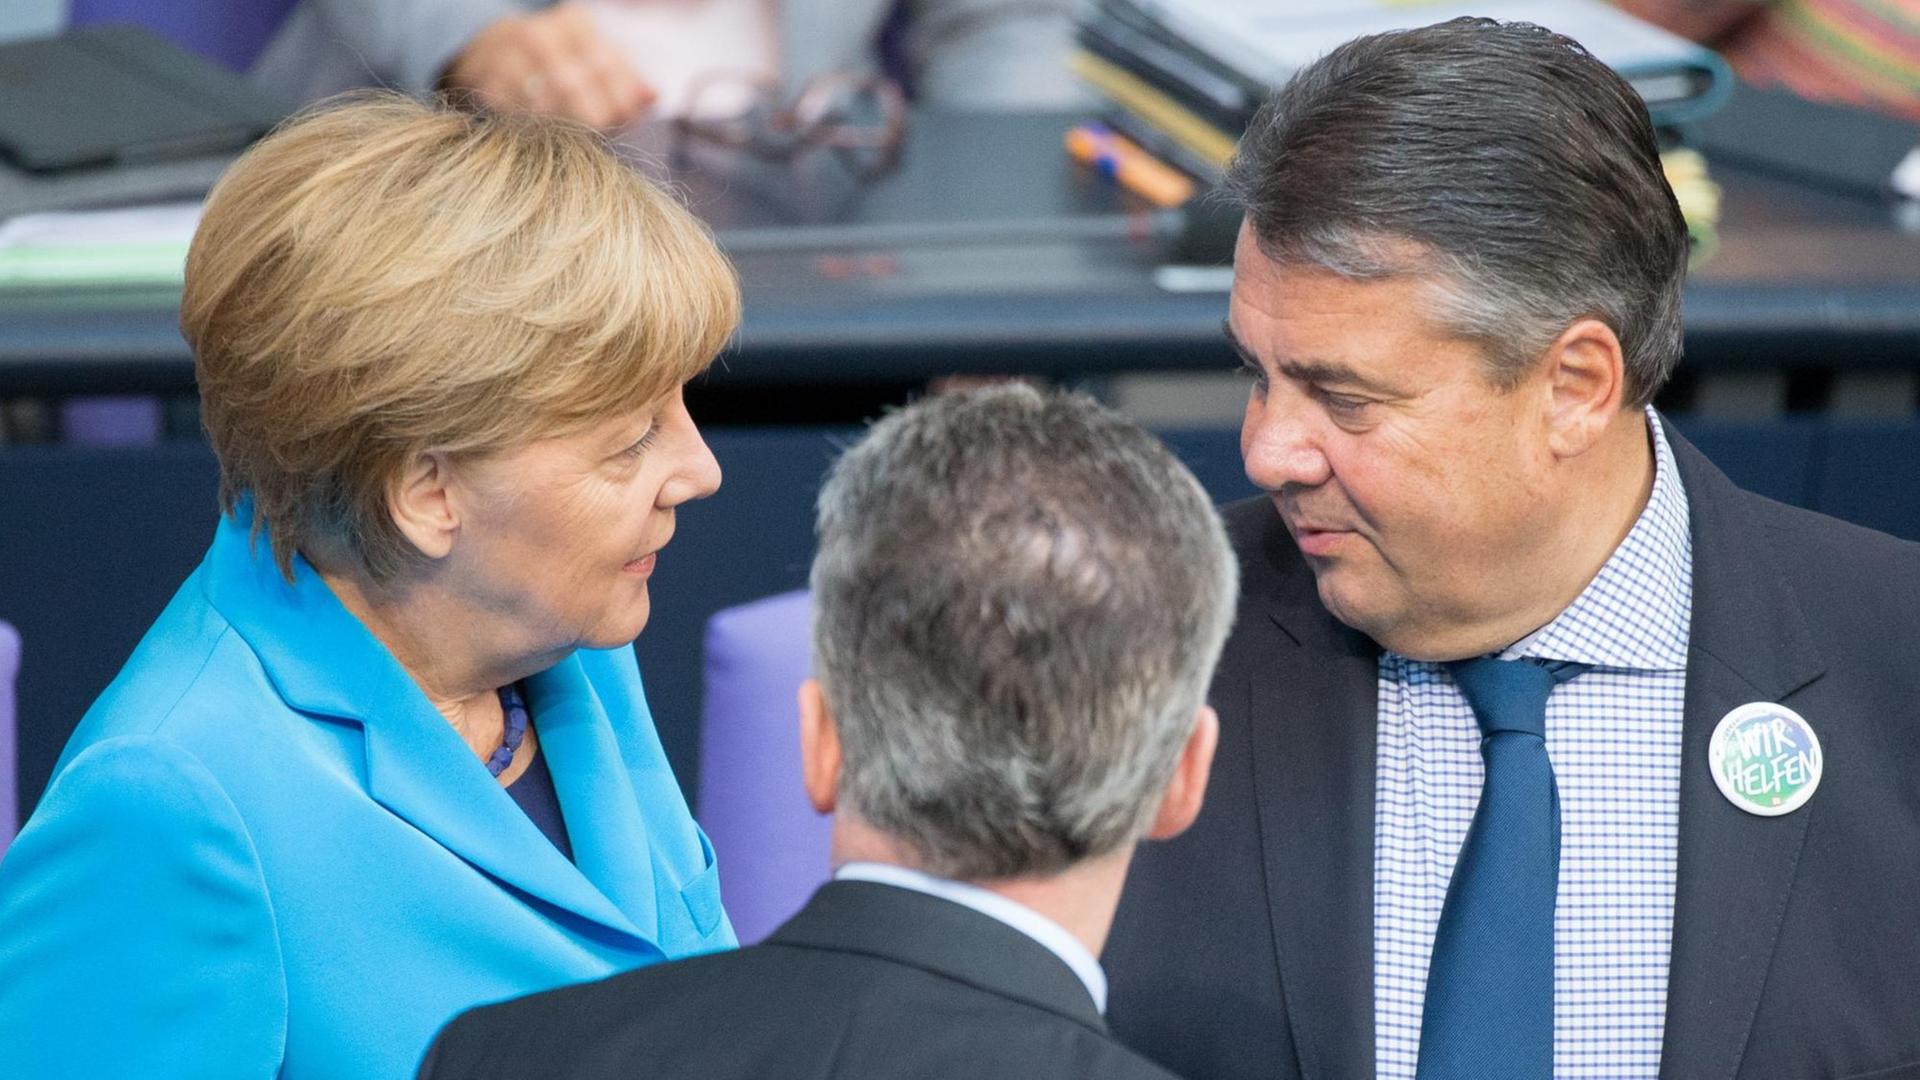 Bundeskanzlerin Angela Merkel (vl, CDU), Bundesinnenminister Thomas de Maiziere (CDU) und Bundeswirtschaftsminister Sigmar Gabriel (SPD) unterhalten sich am 09.09.2015 im Bundestag in Berlin.